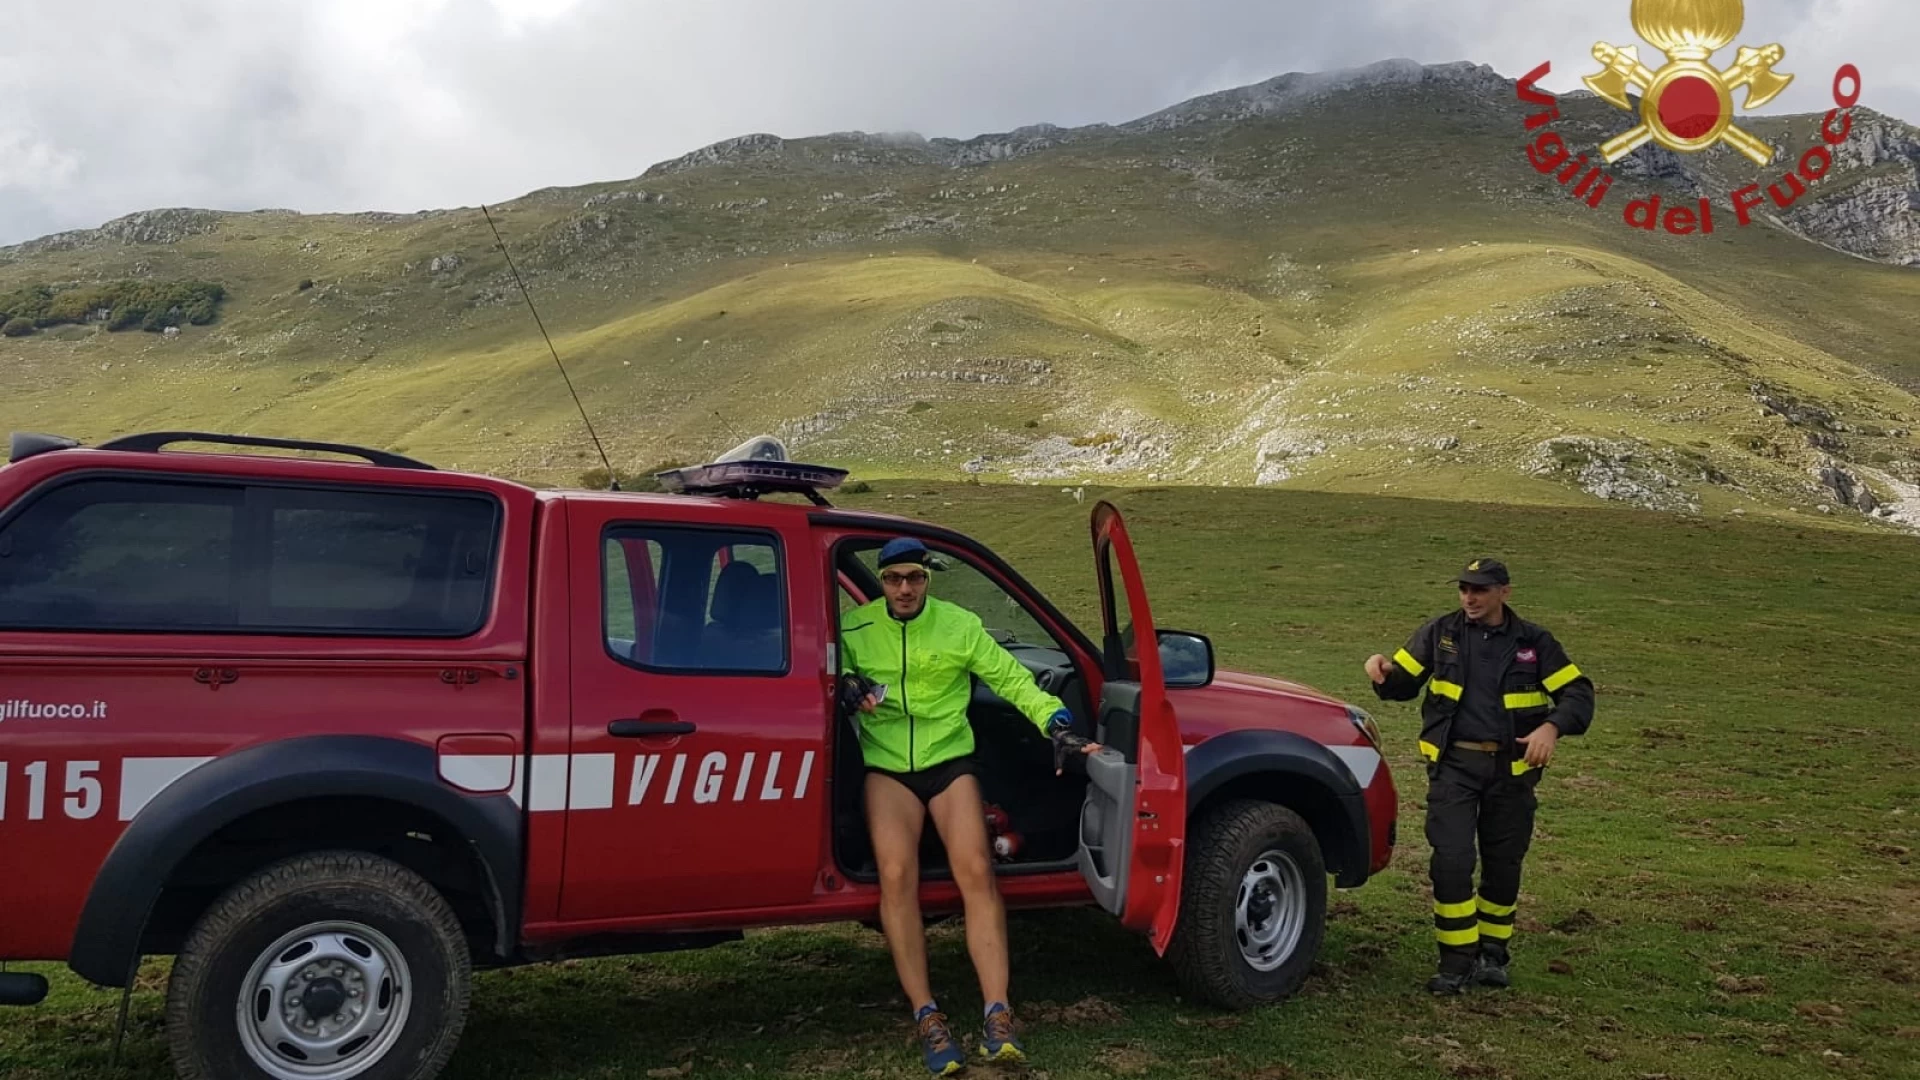 Rocchetta a Volturno: escursionista infortunato , tratto in salvo dai Vigili del Fuoco su Monte Marrone.